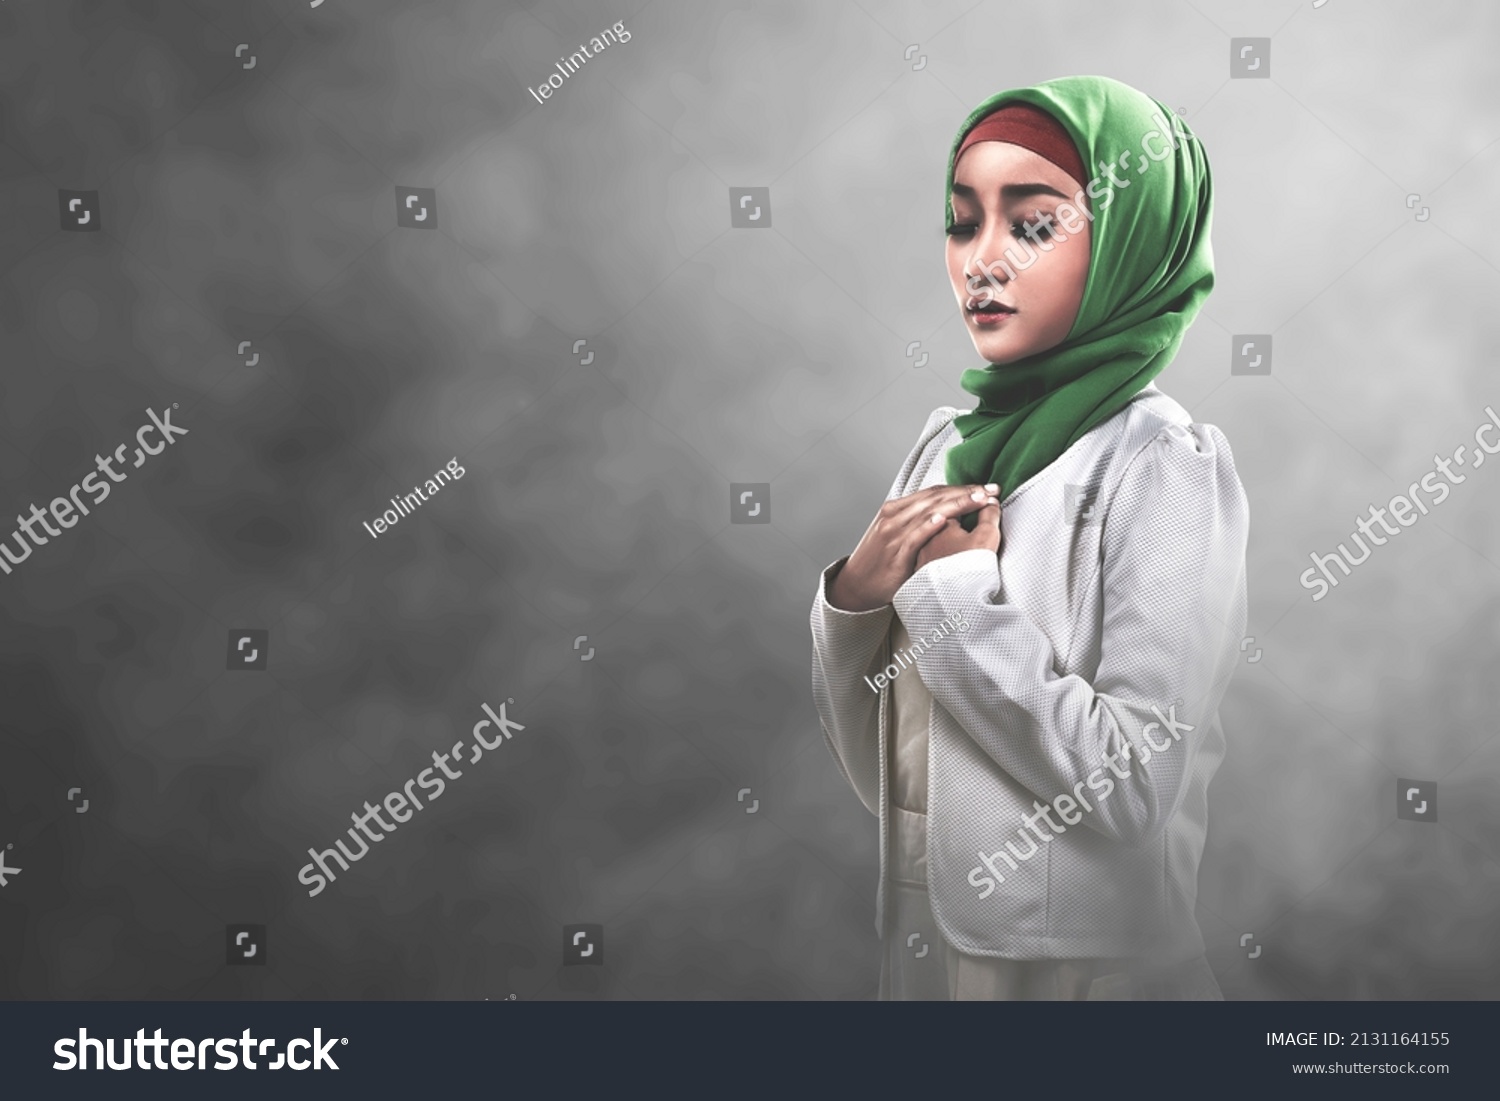 Muslima in hot latex